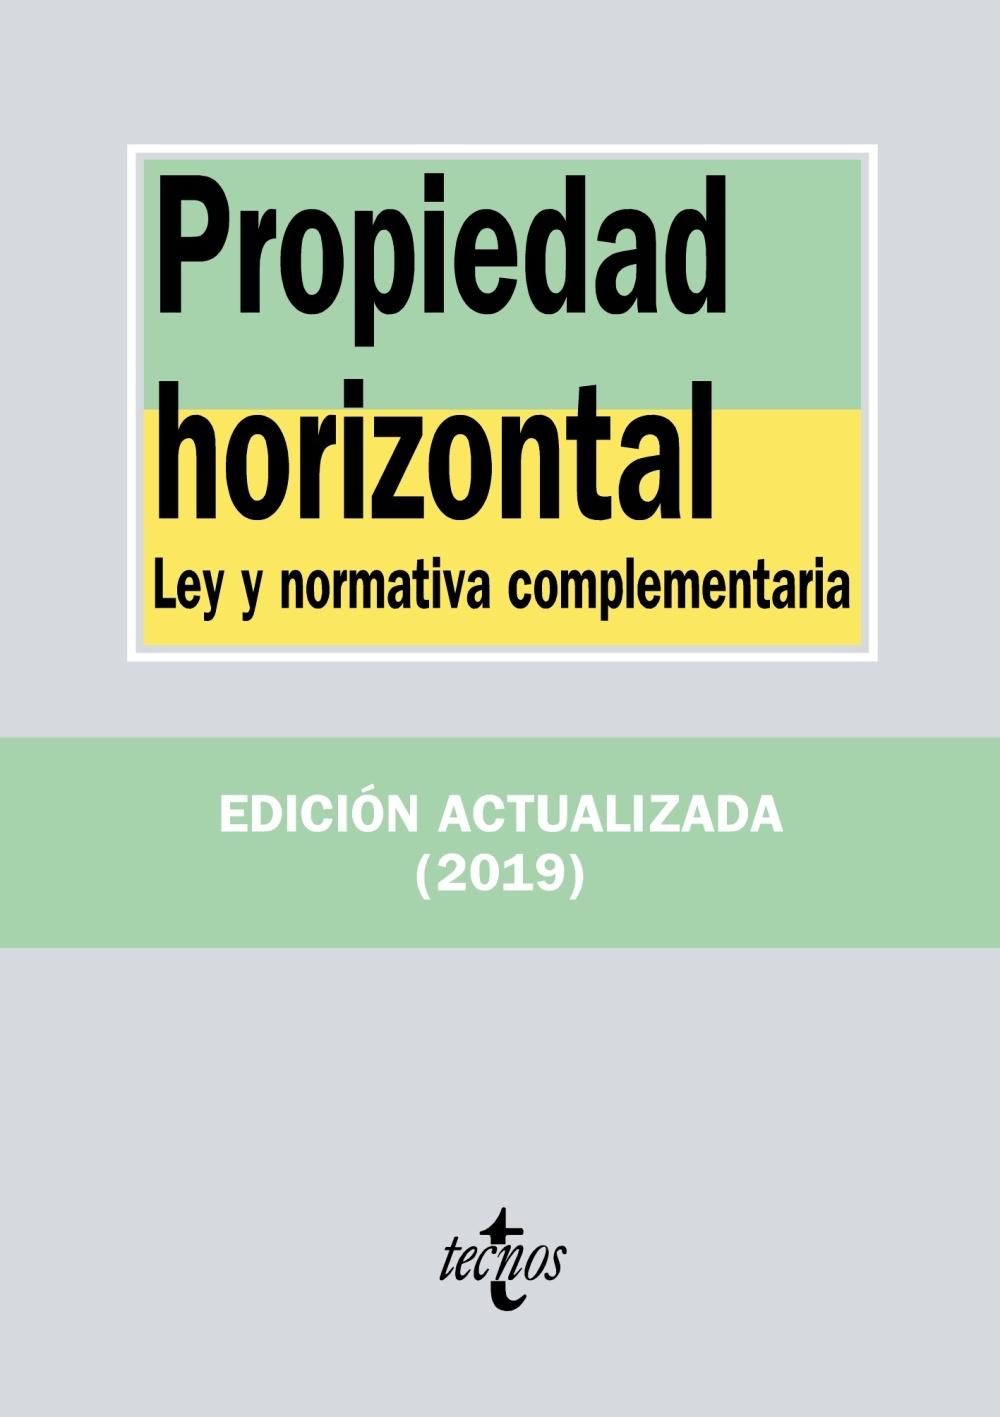 PROPIEDAD HORIZONTAL "LEY Y NORMATIVA COMPLEMENTARIA"